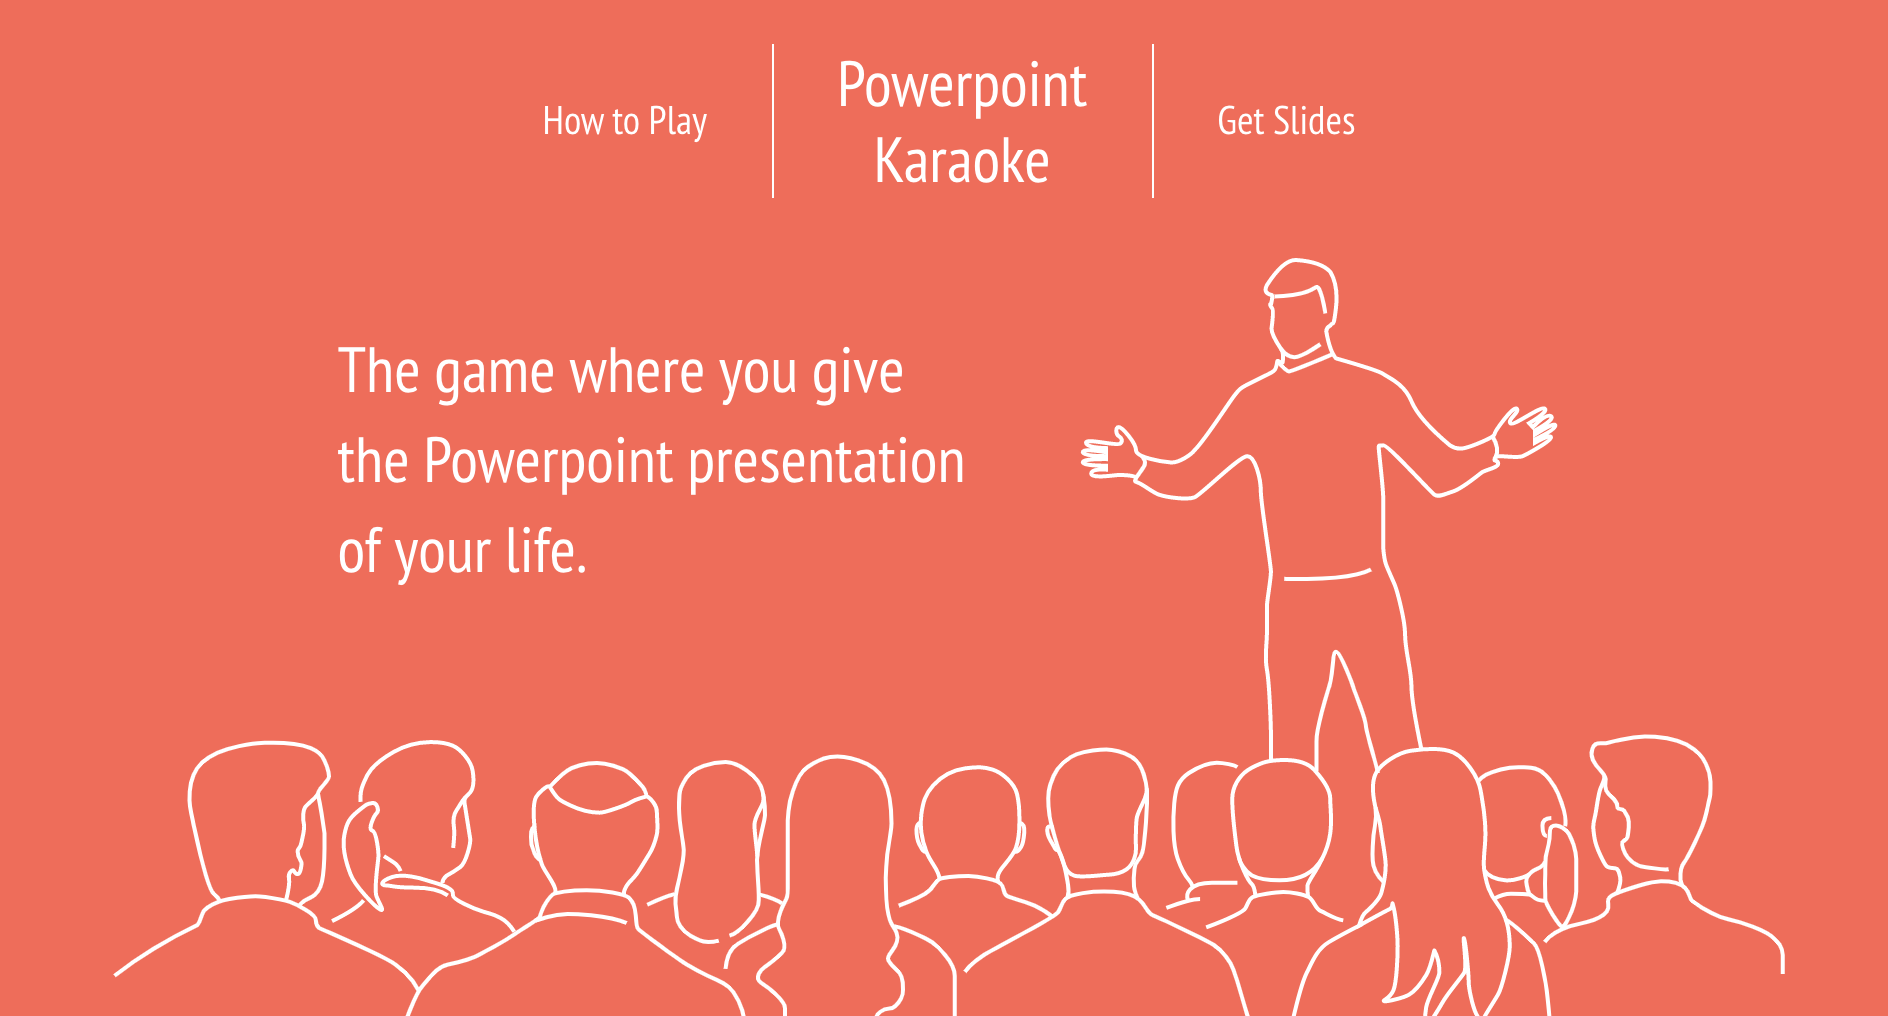 Powerpoint Karaoke